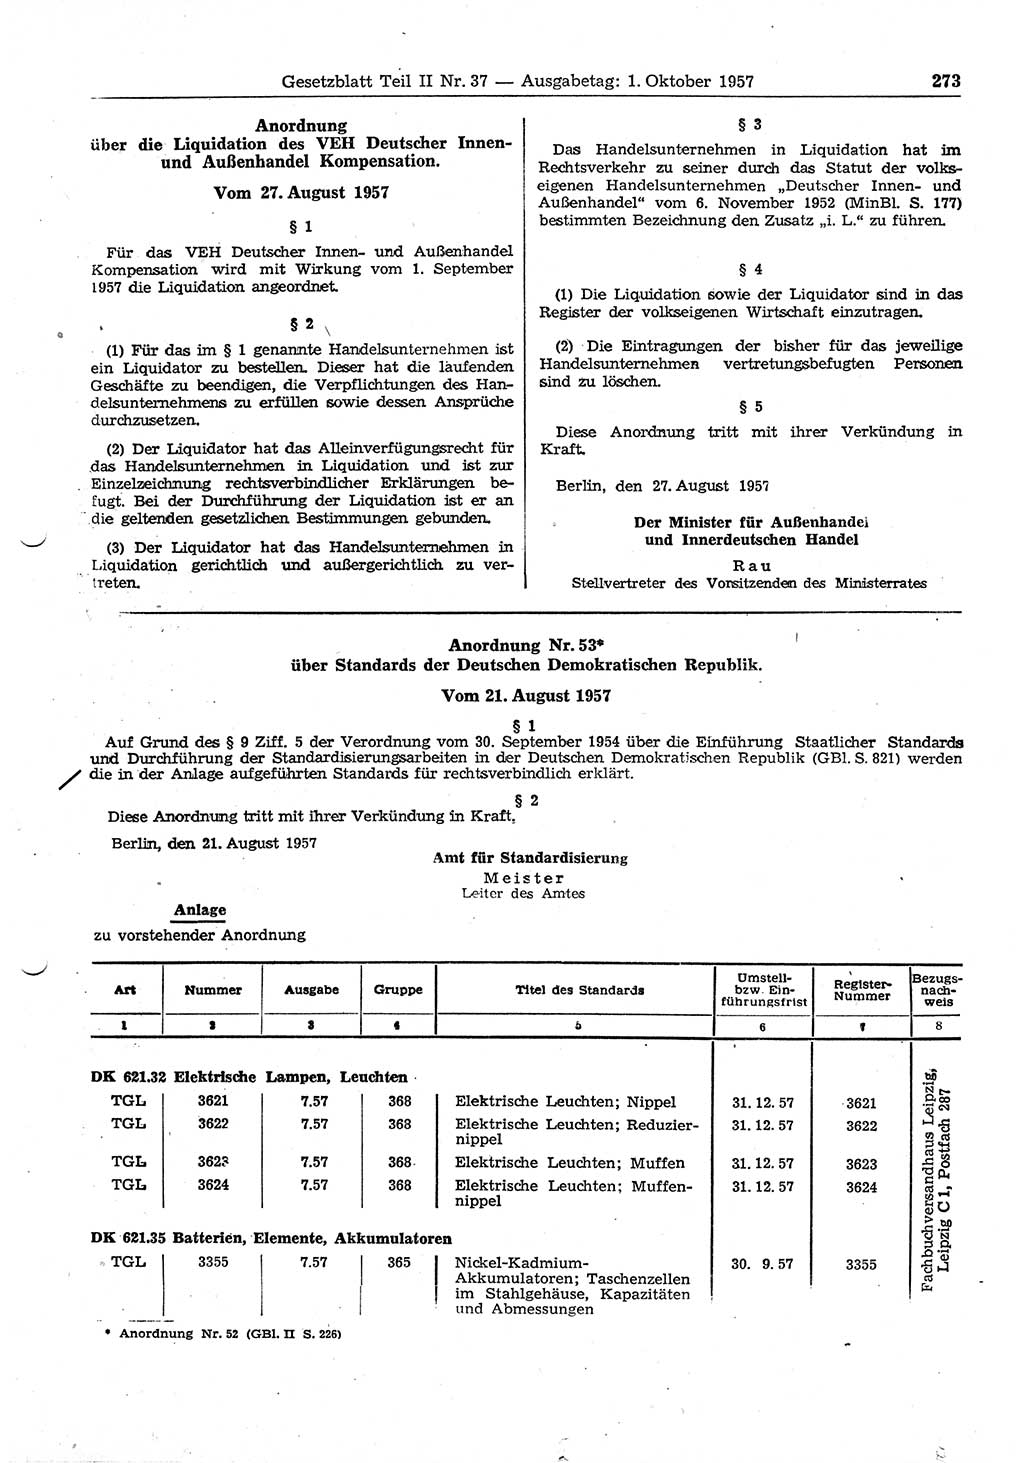 Gesetzblatt (GBl.) der Deutschen Demokratischen Republik (DDR) Teil ⅠⅠ 1957, Seite 273 (GBl. DDR ⅠⅠ 1957, S. 273)